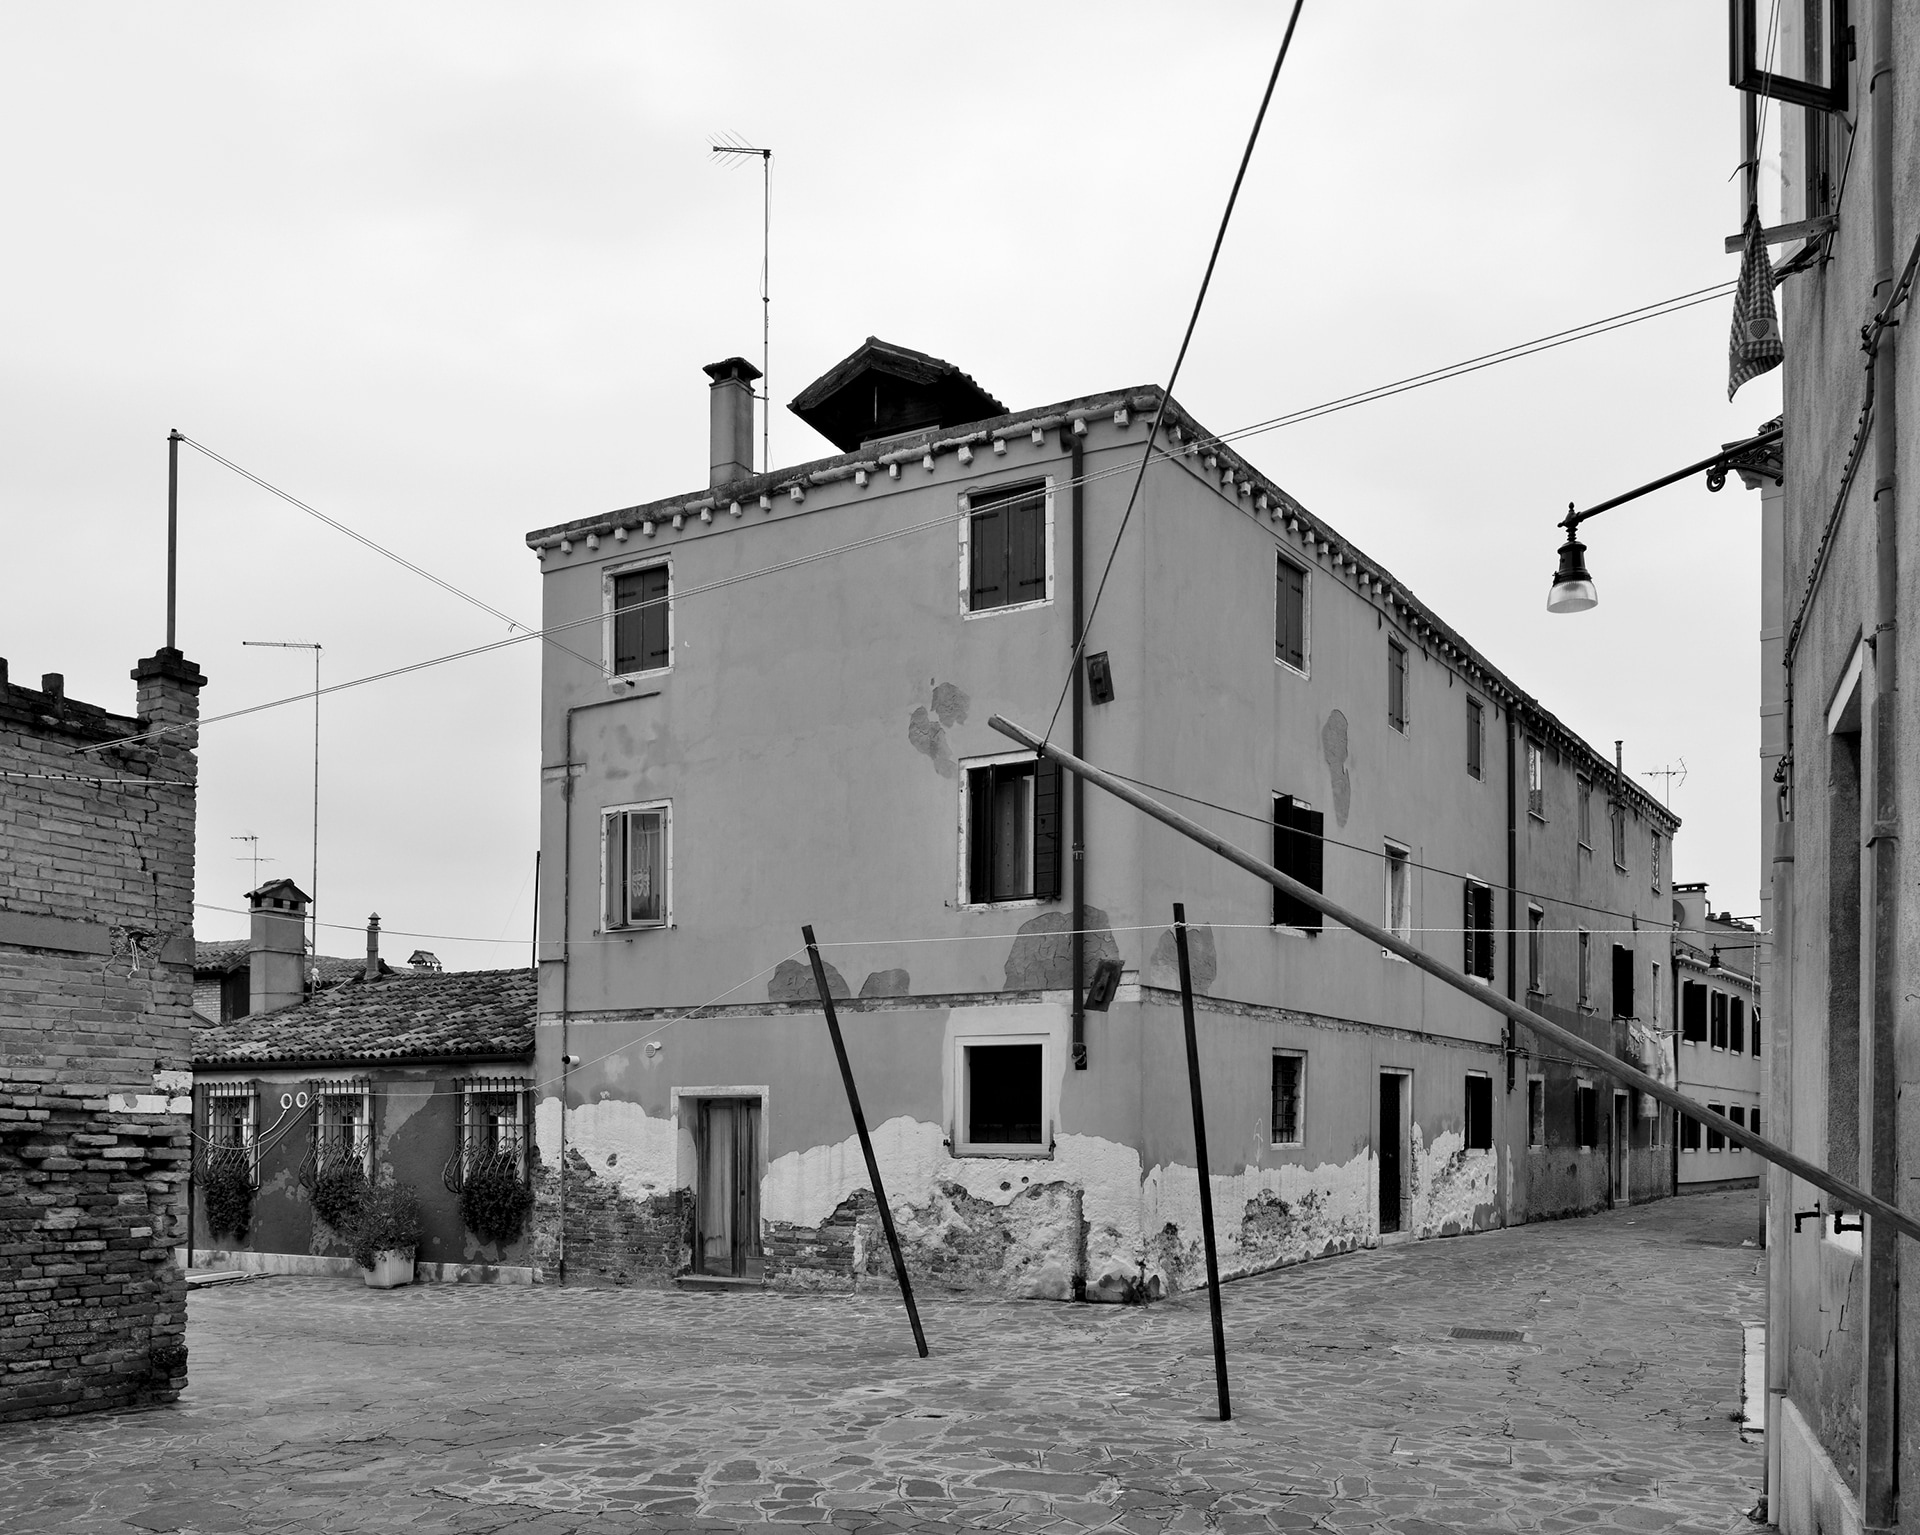 Dorsoduro, Corte Berlomeni, 2016. Venice Urban Photo Project / Mario Peliti